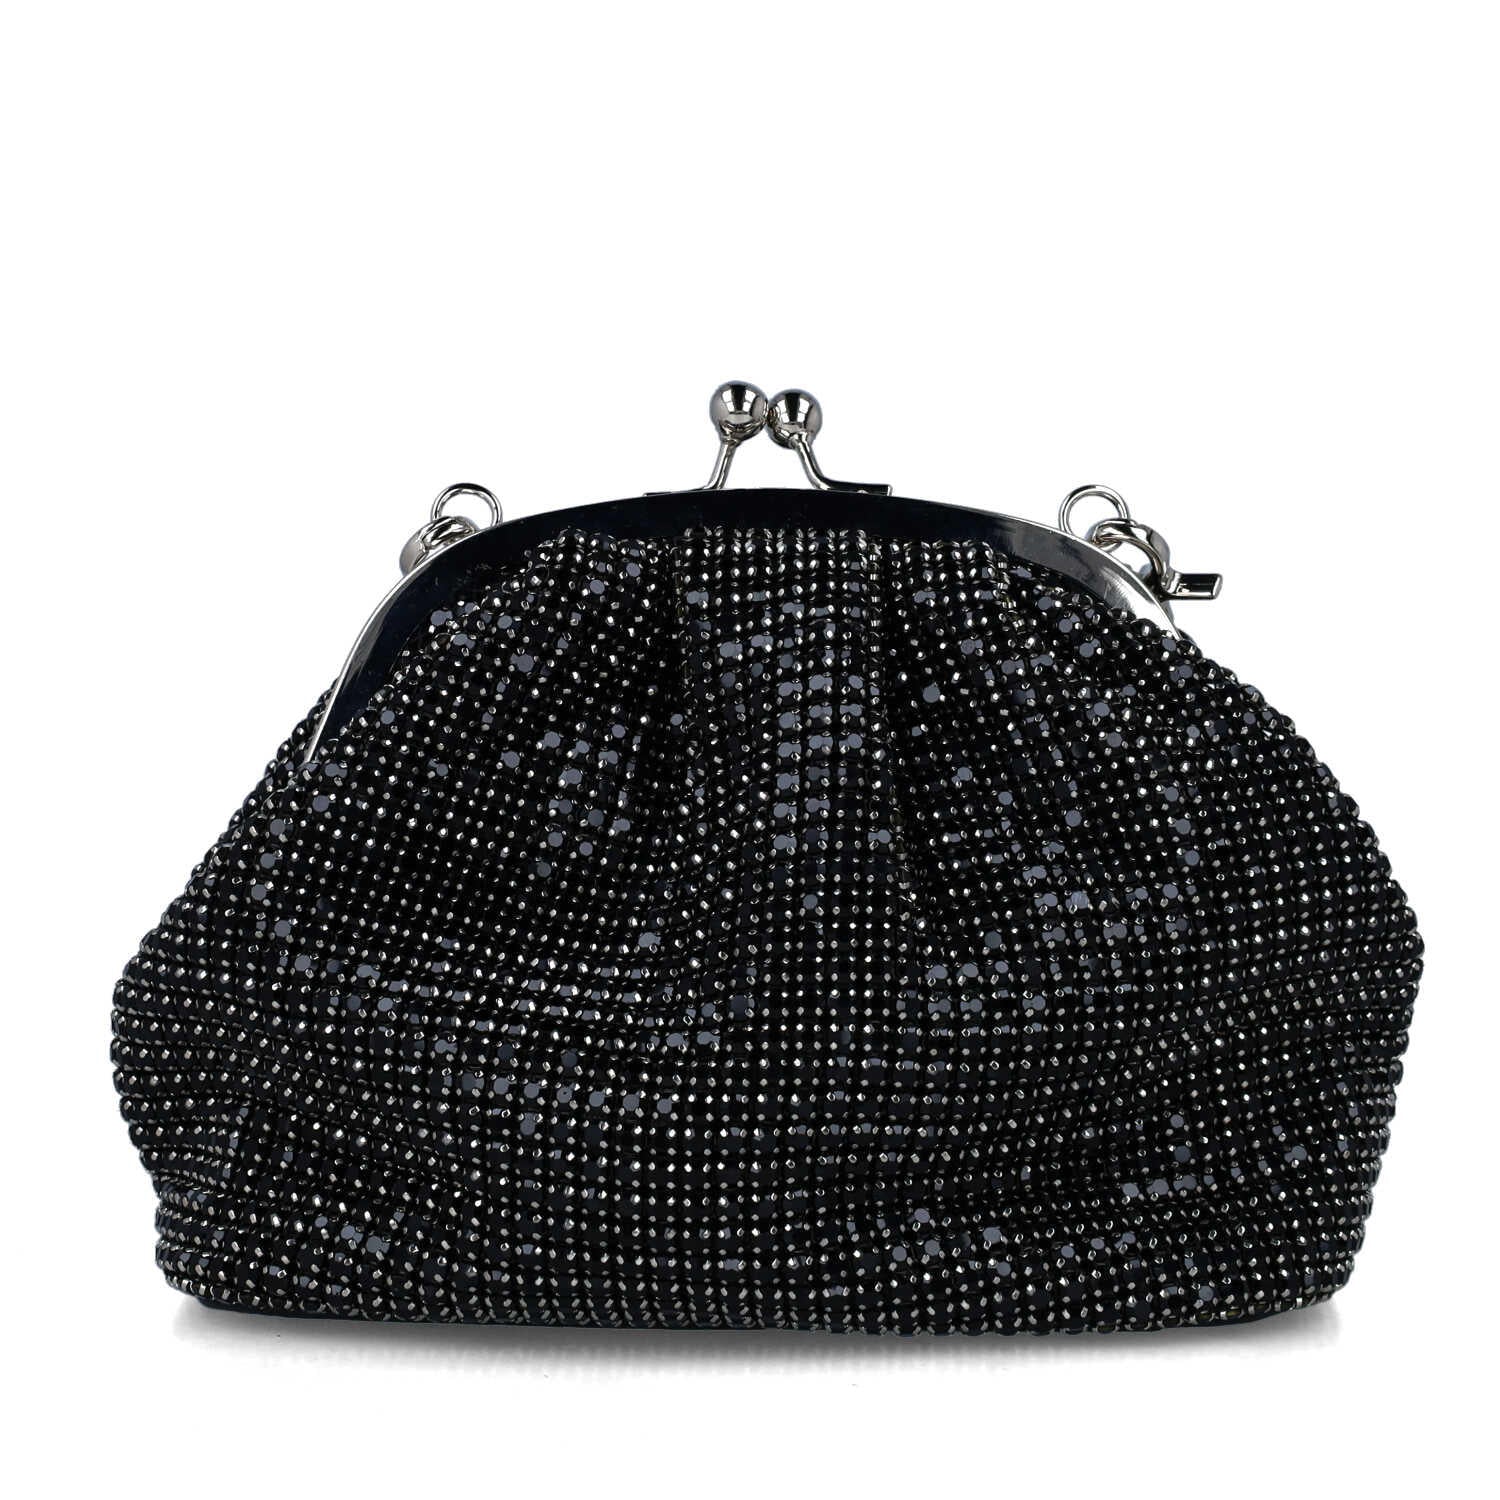 Black Embellished Handbag_85673_01_03